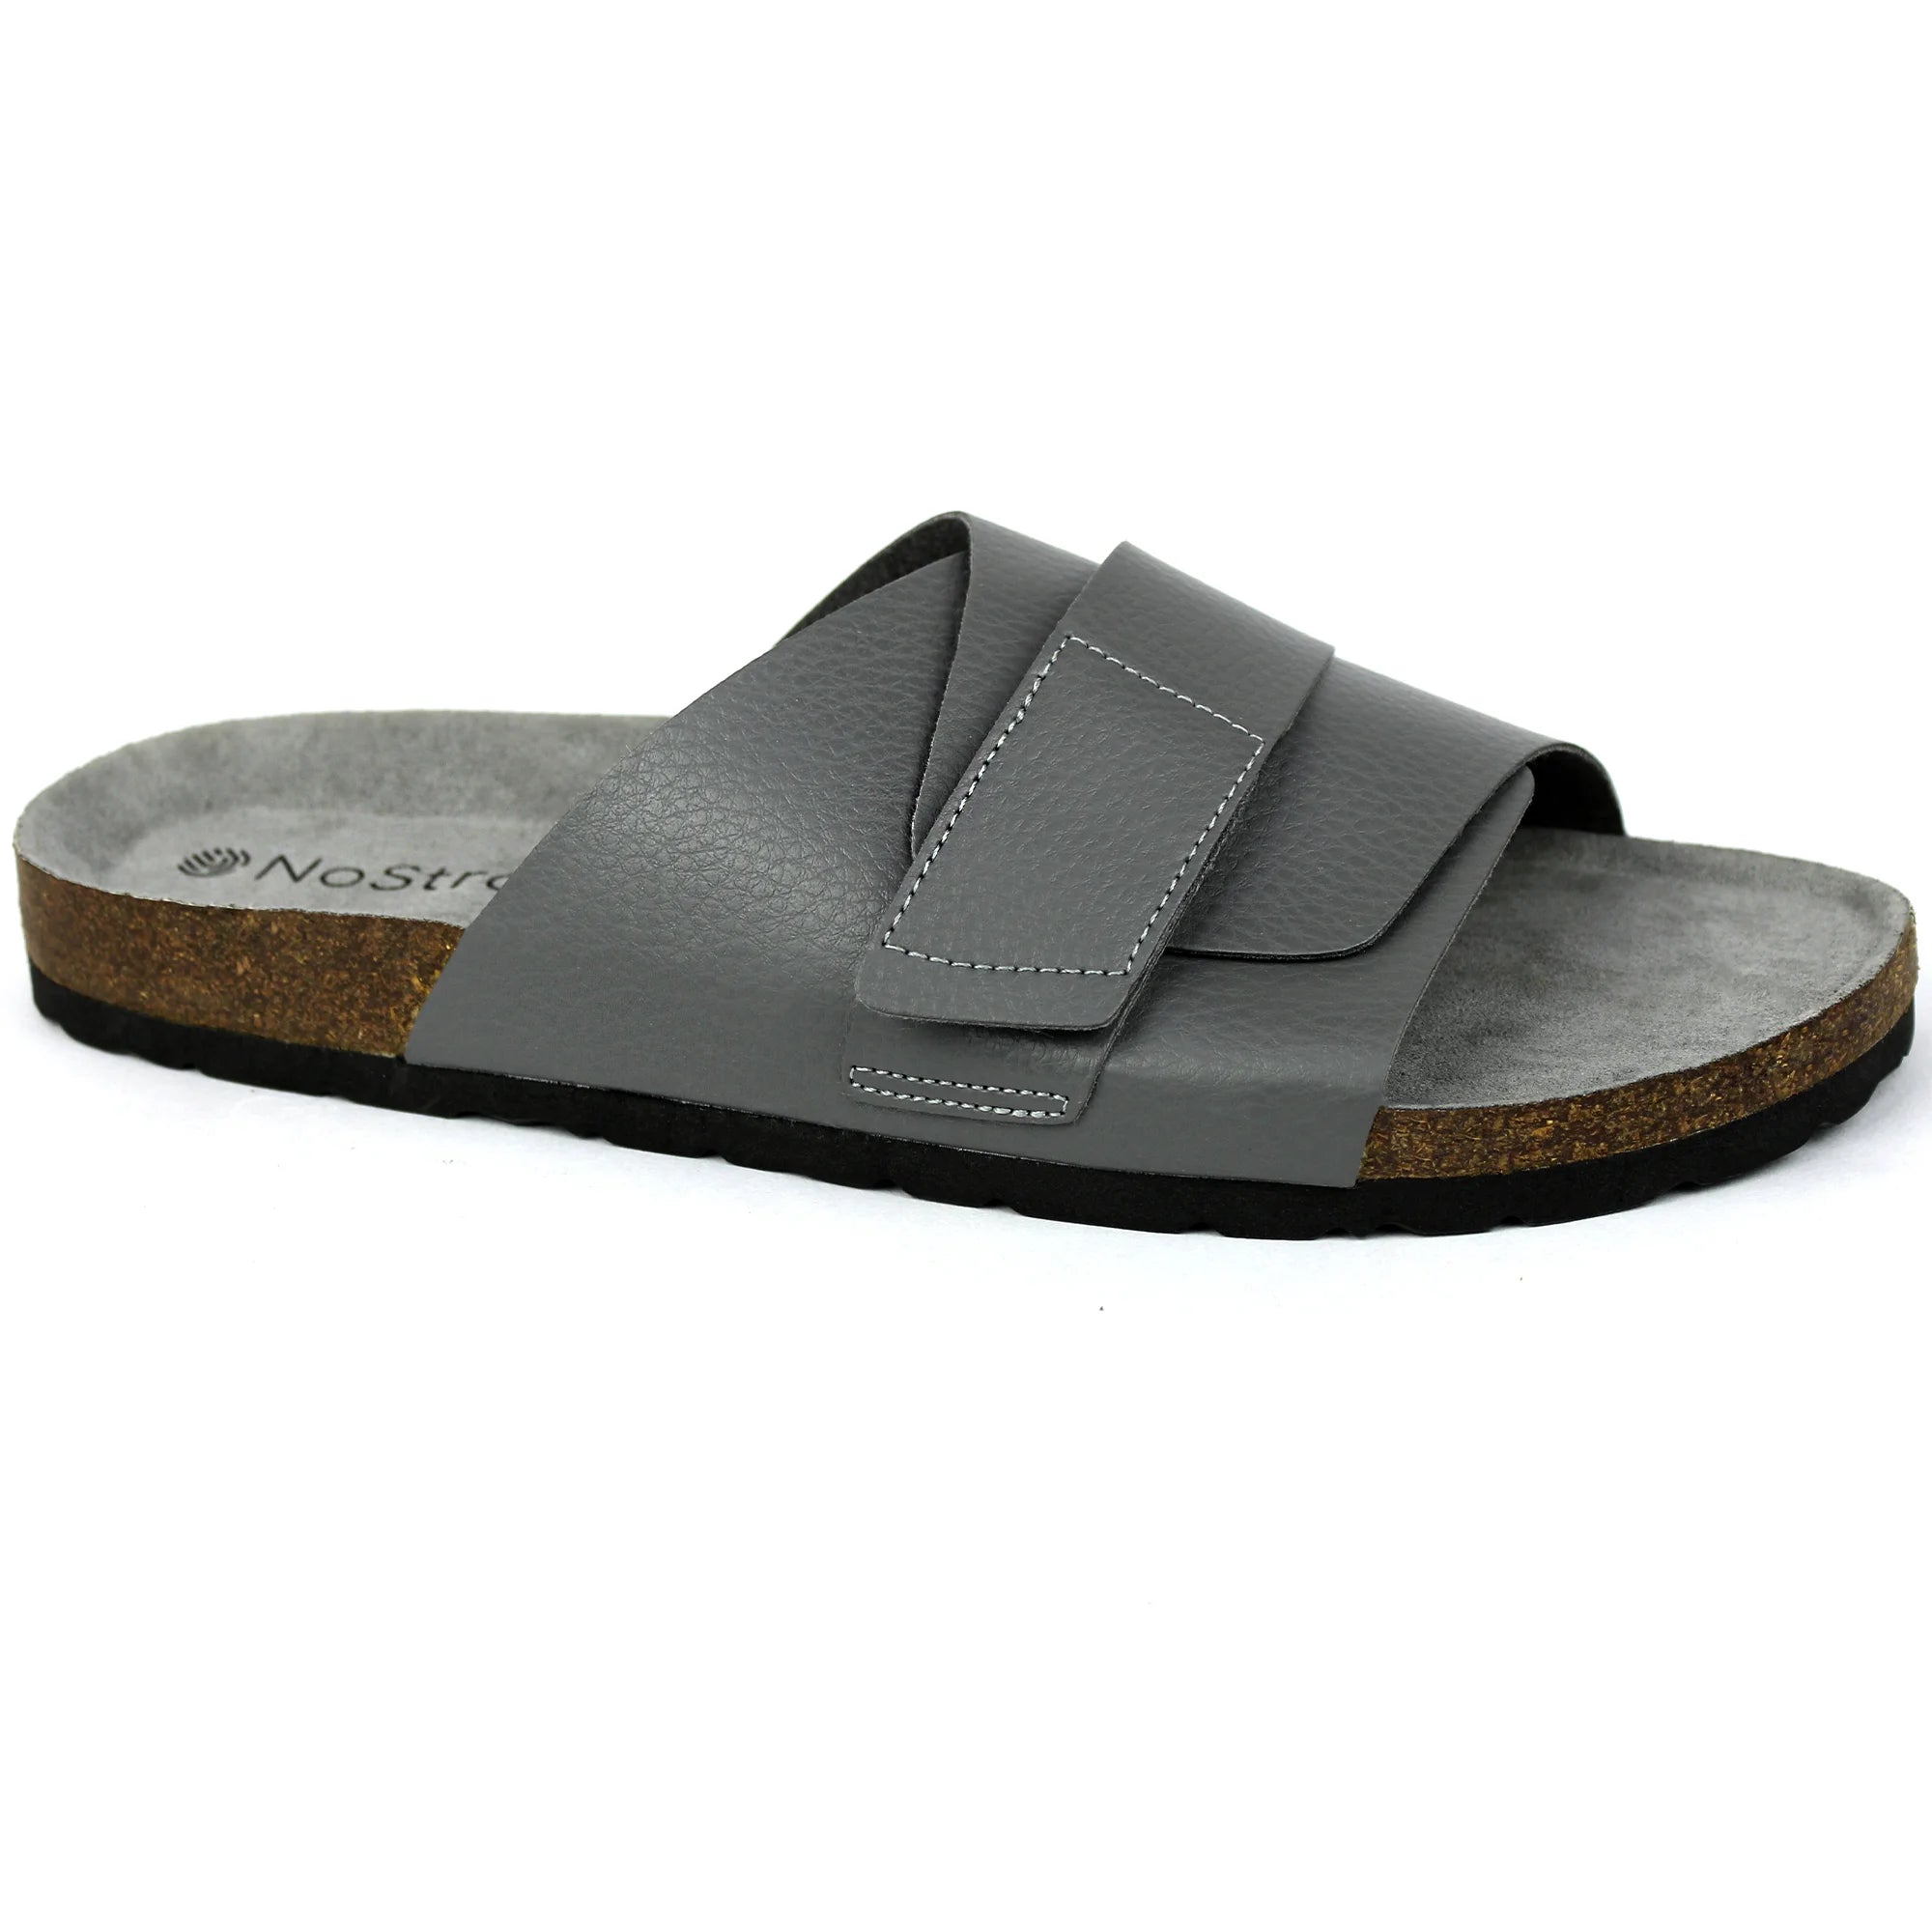 Women's Comfort Sandals - Buy Comfort Sandals Online for Women | Westside